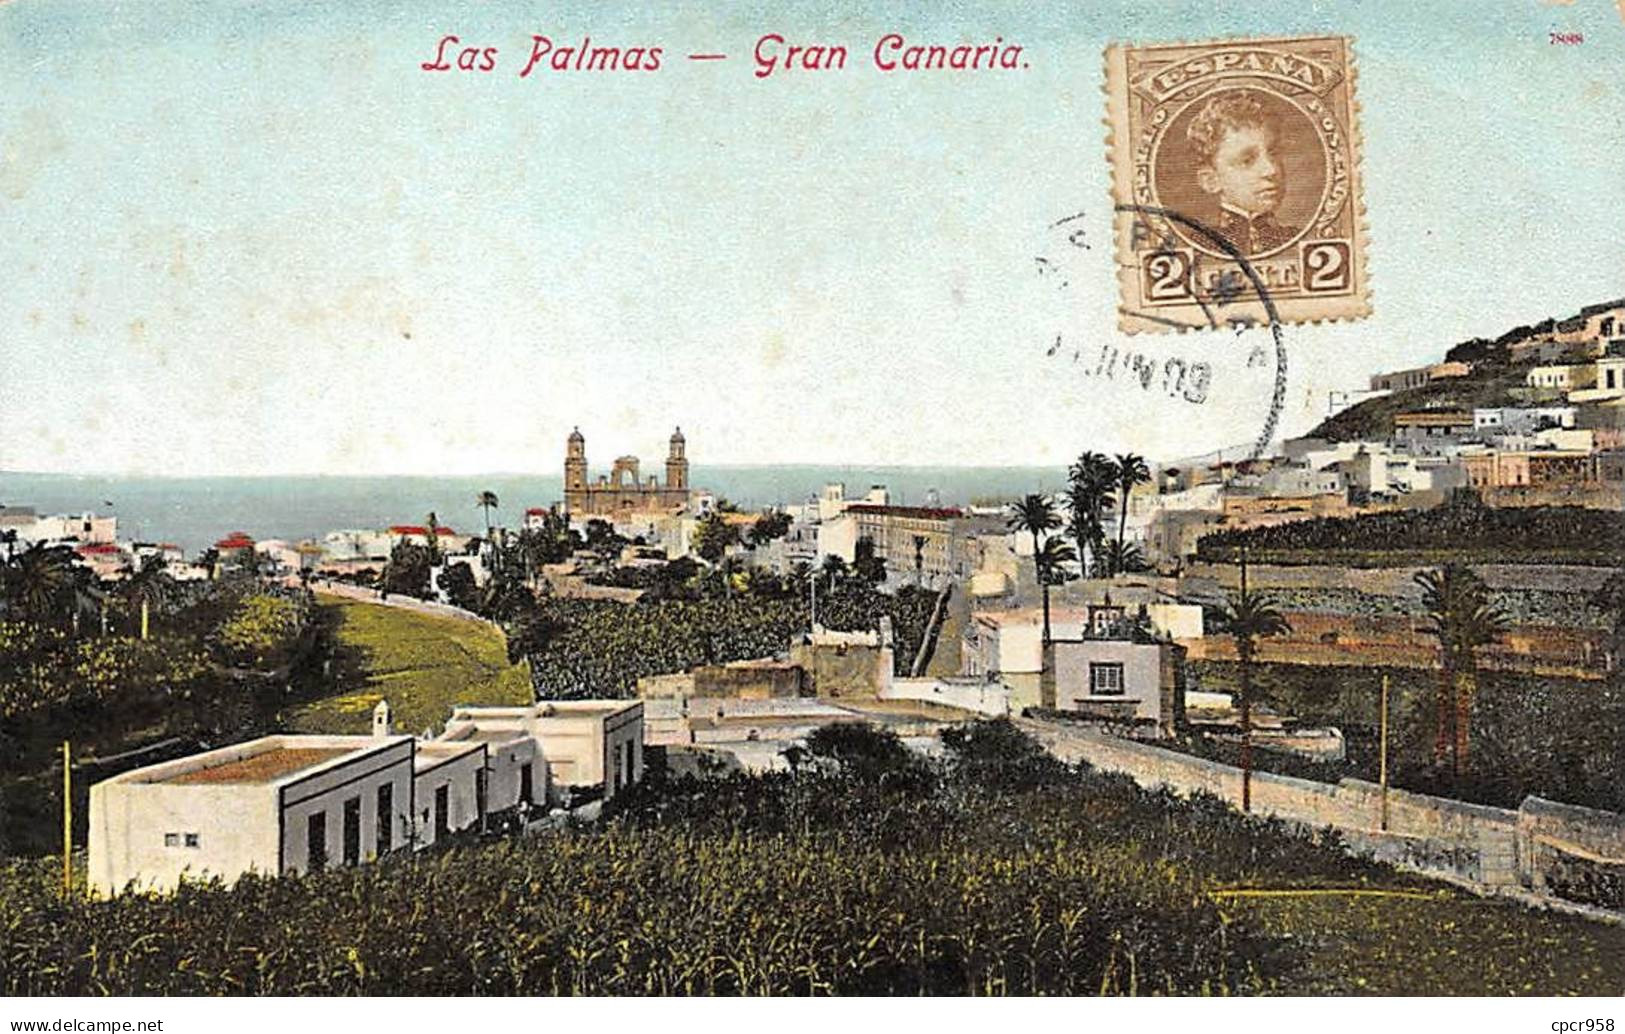 Espagne - N°79408 - LAS PALMAS - GRAN CANARIA - Gran Canaria